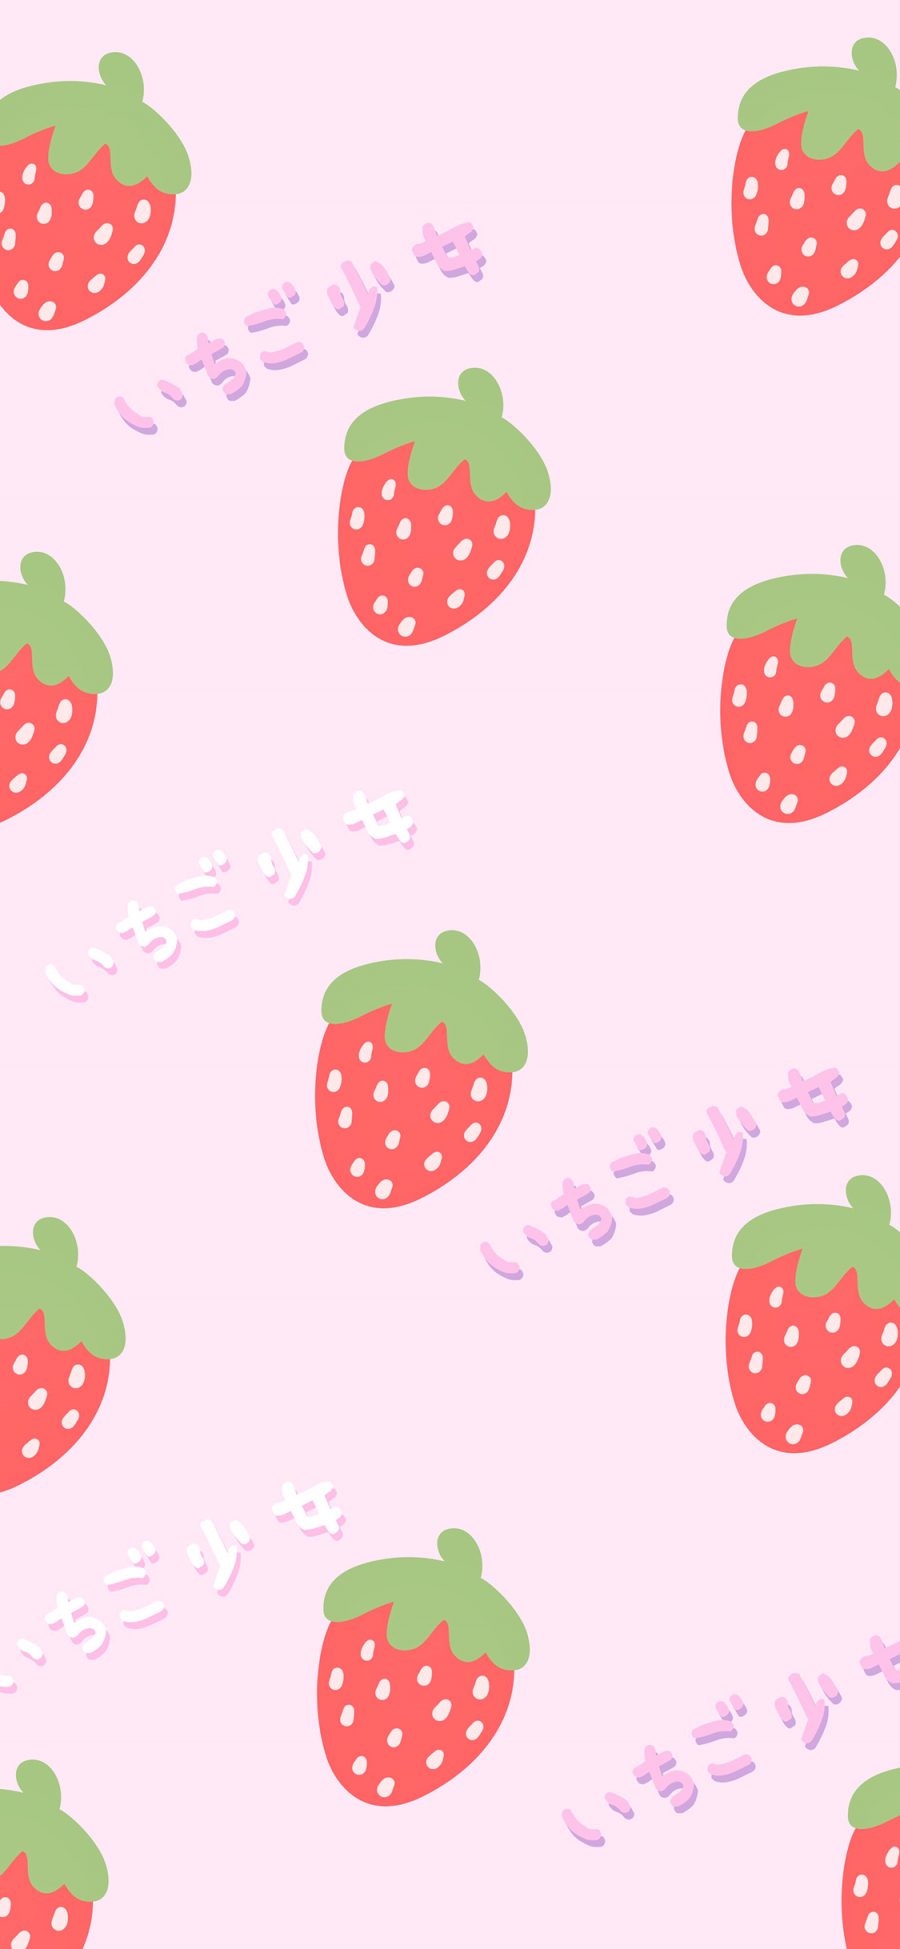 [2436×1125]草莓 少女 平铺 粉色 苹果手机动漫壁纸图片